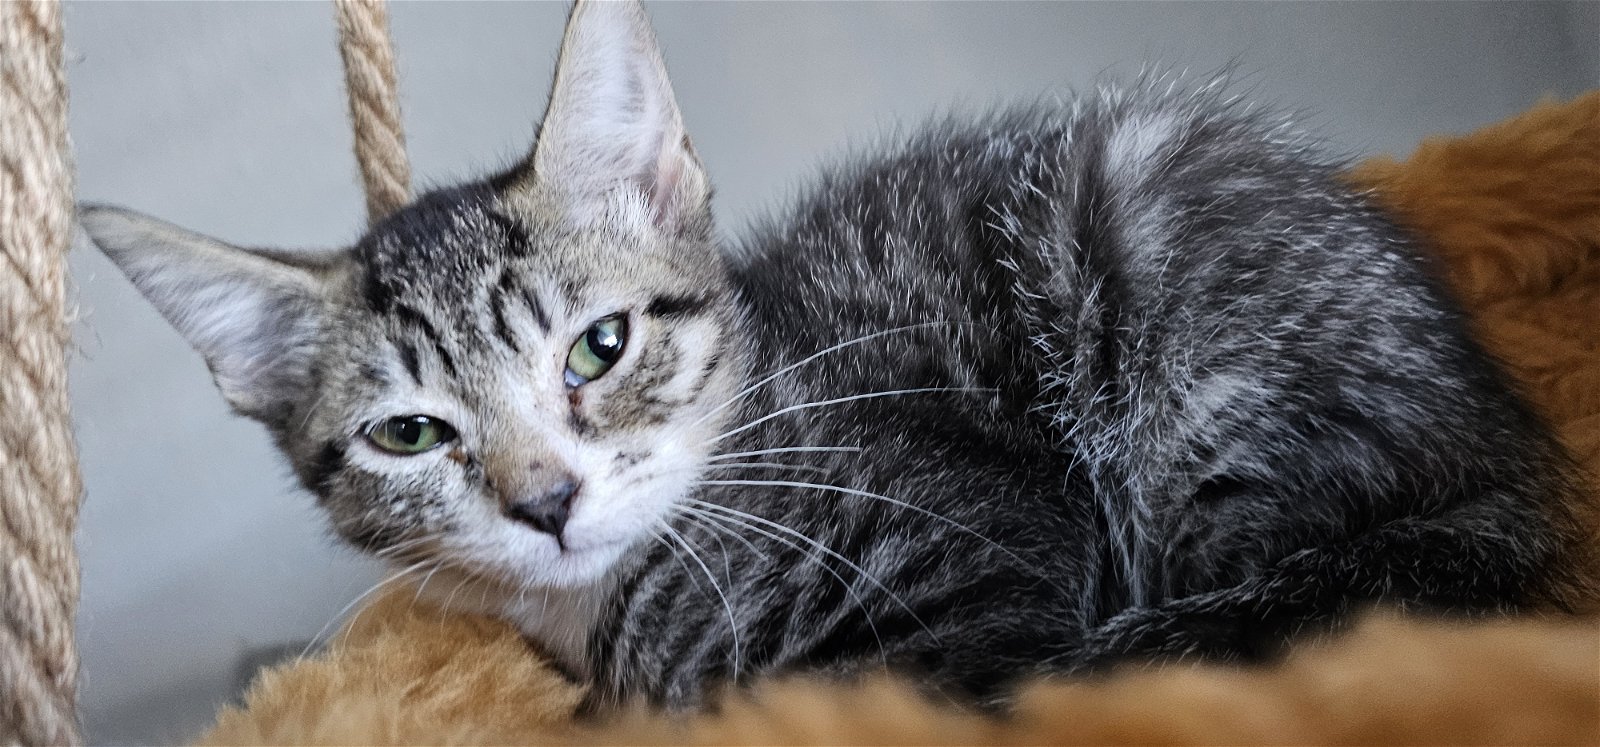 adoptable Cat in Hanover, PA named Dani